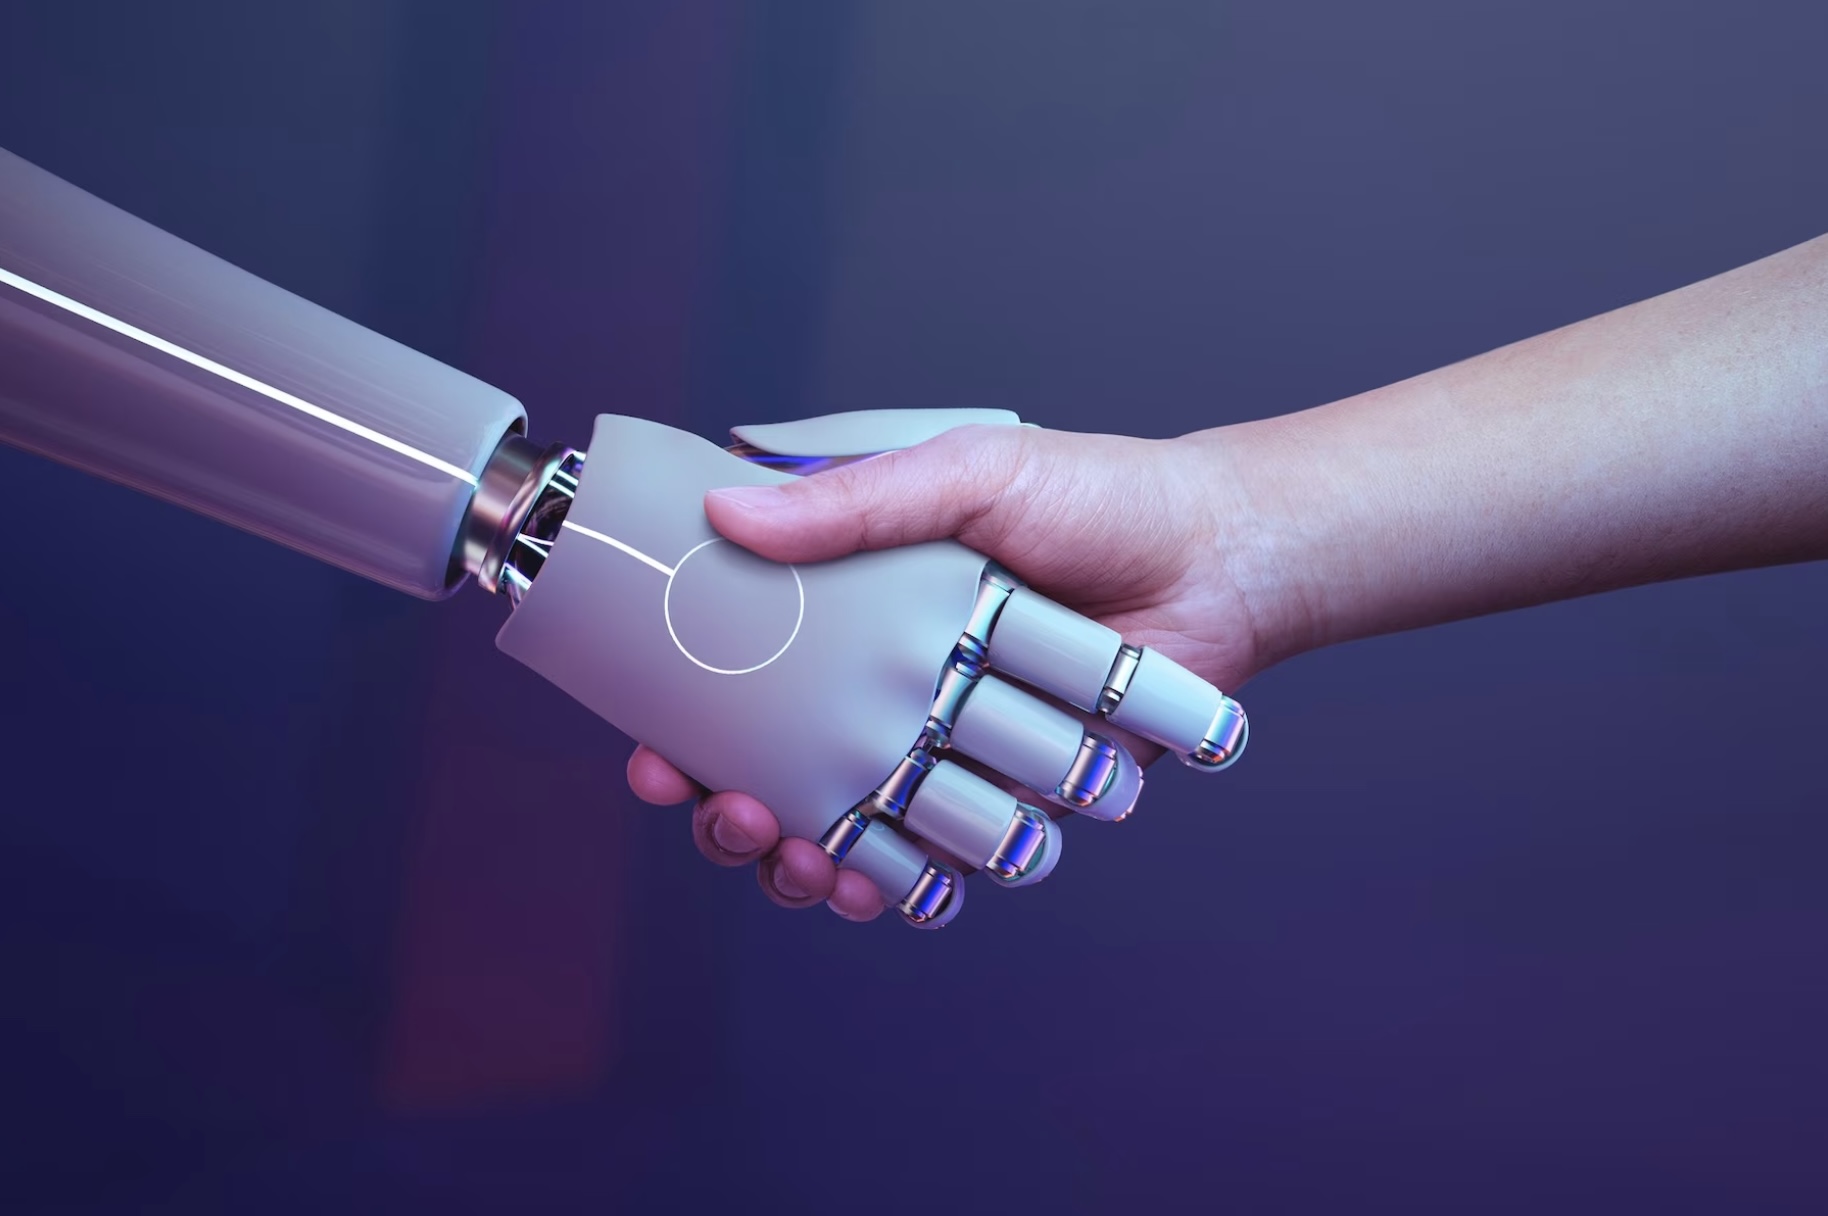 Mano humana dándole la mano a una mano robot